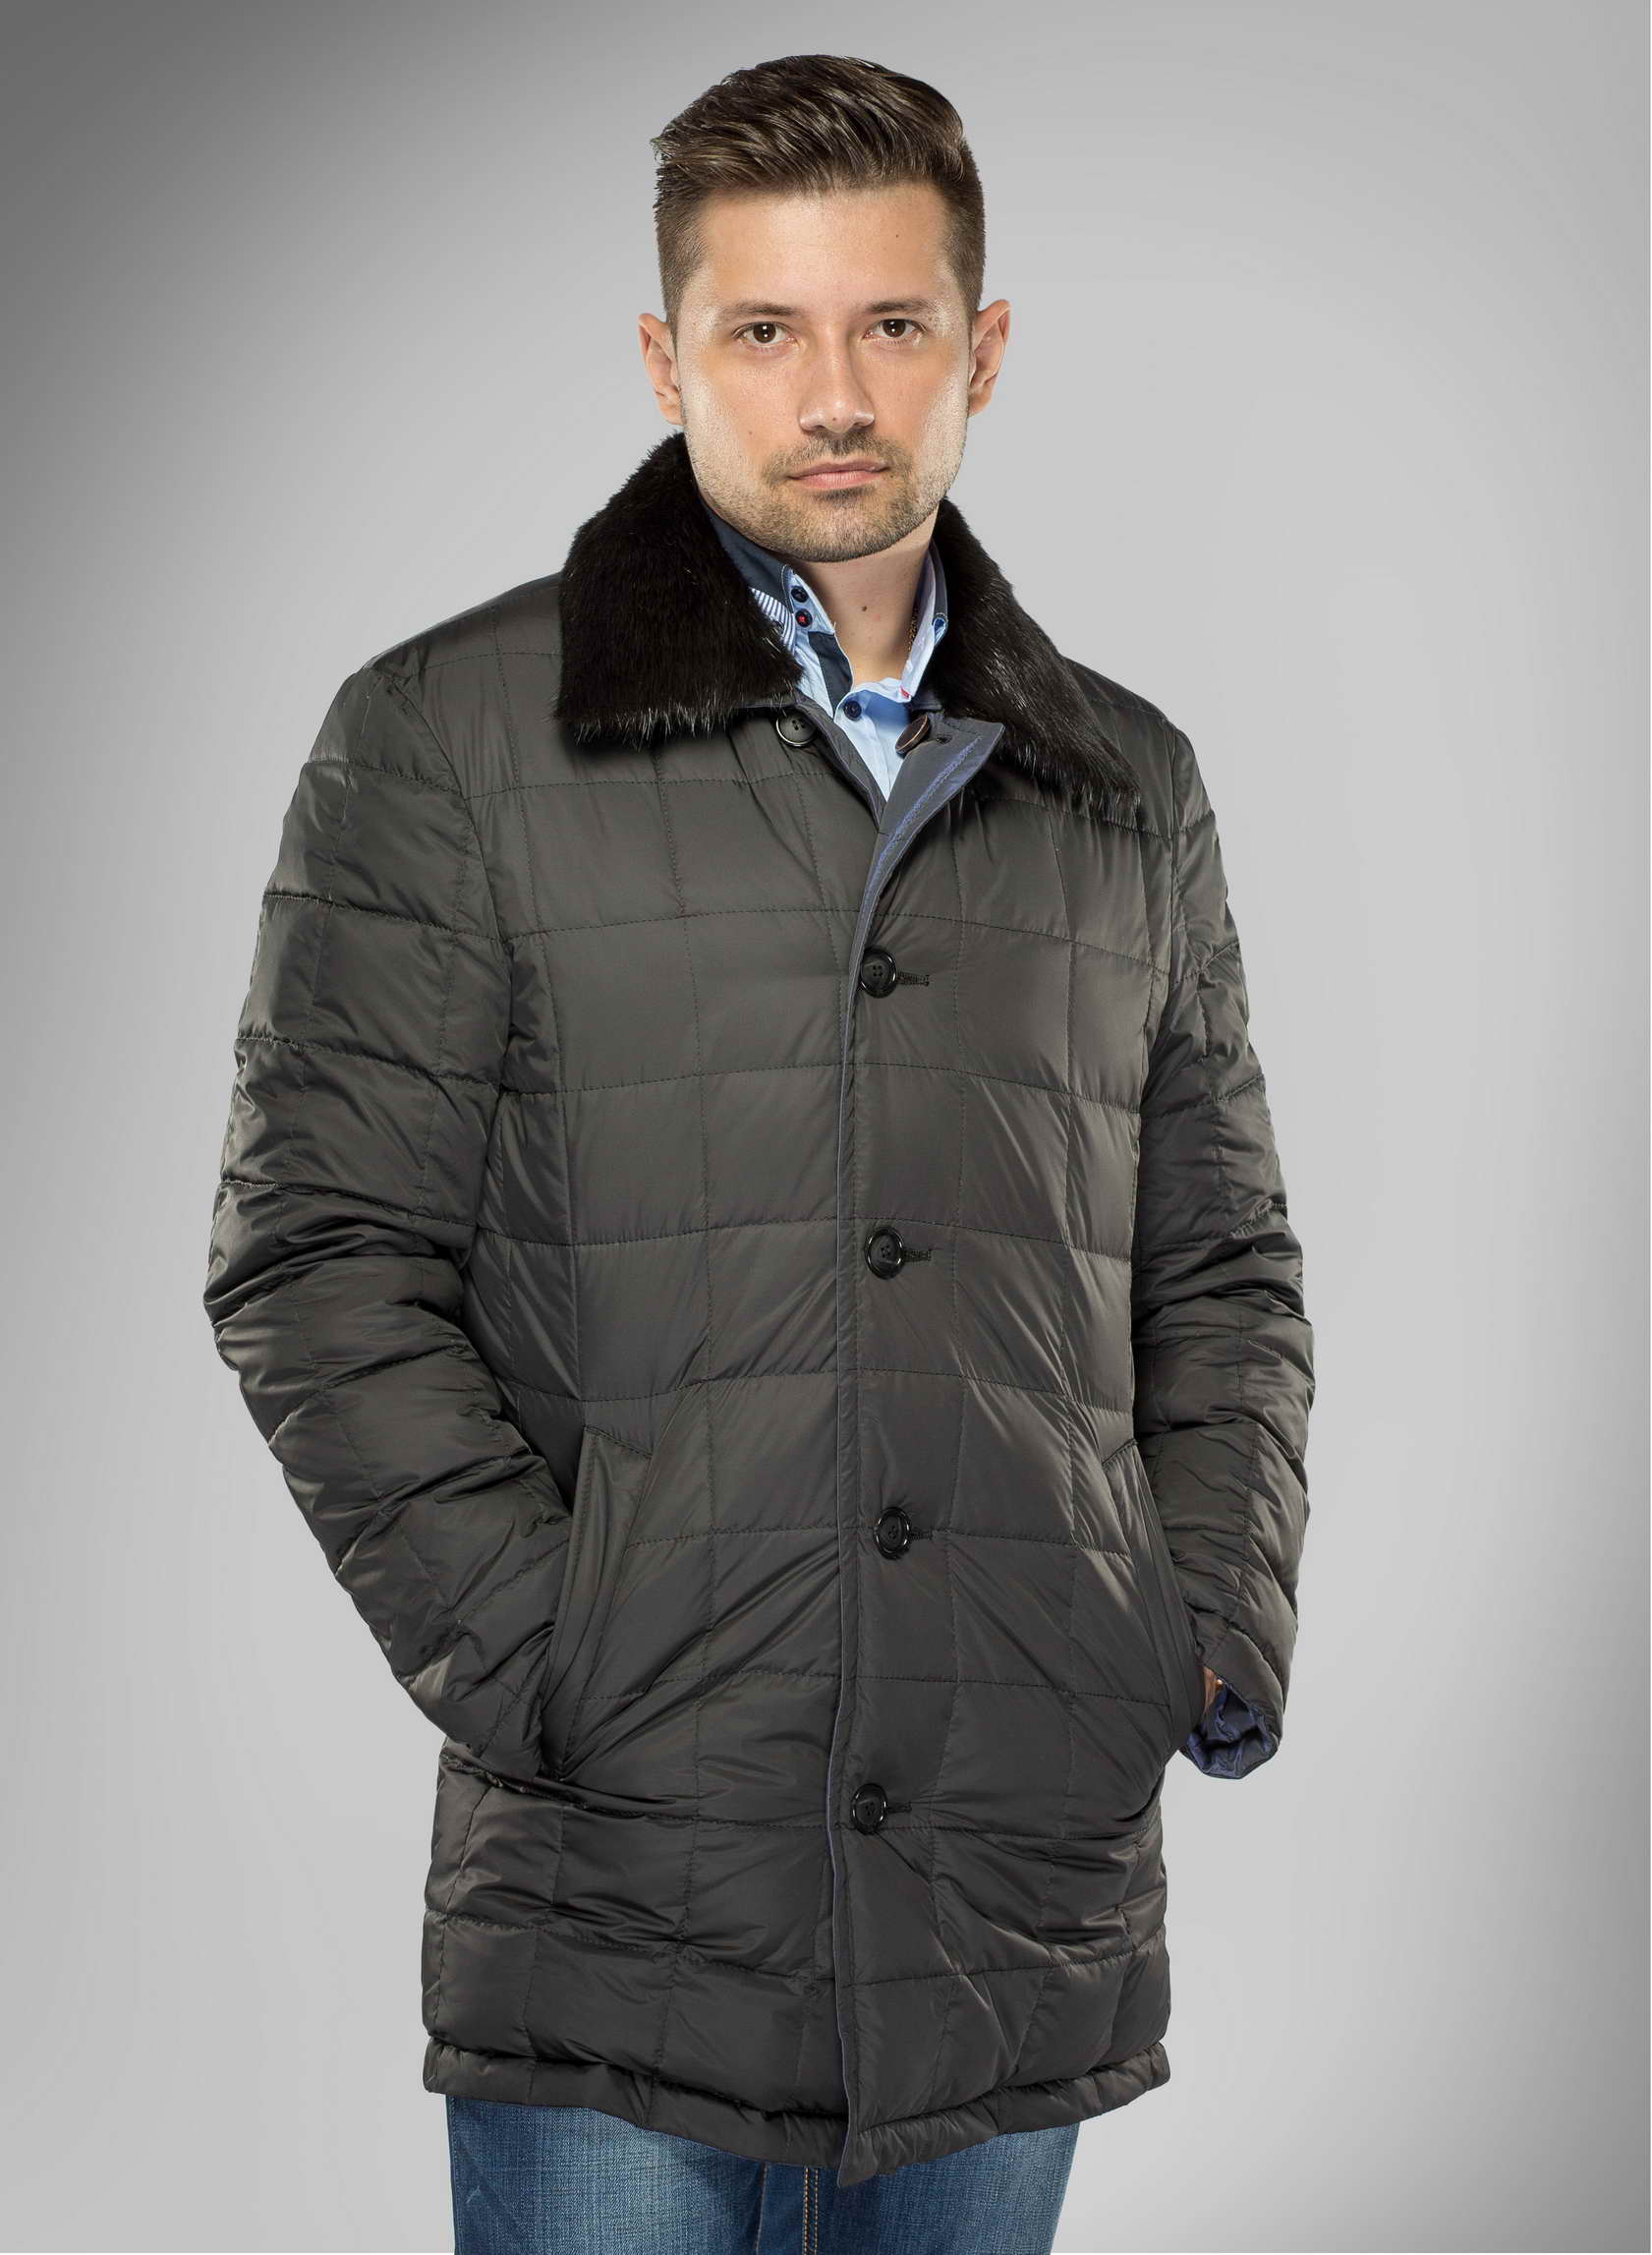 Мужские куртки 52 54 размер. Верхняя одежда для мужчин. Зимние куртки мужские классические. Мужская зимняя верхняя одежда. Зимняя верхняя одежда для мужчин.